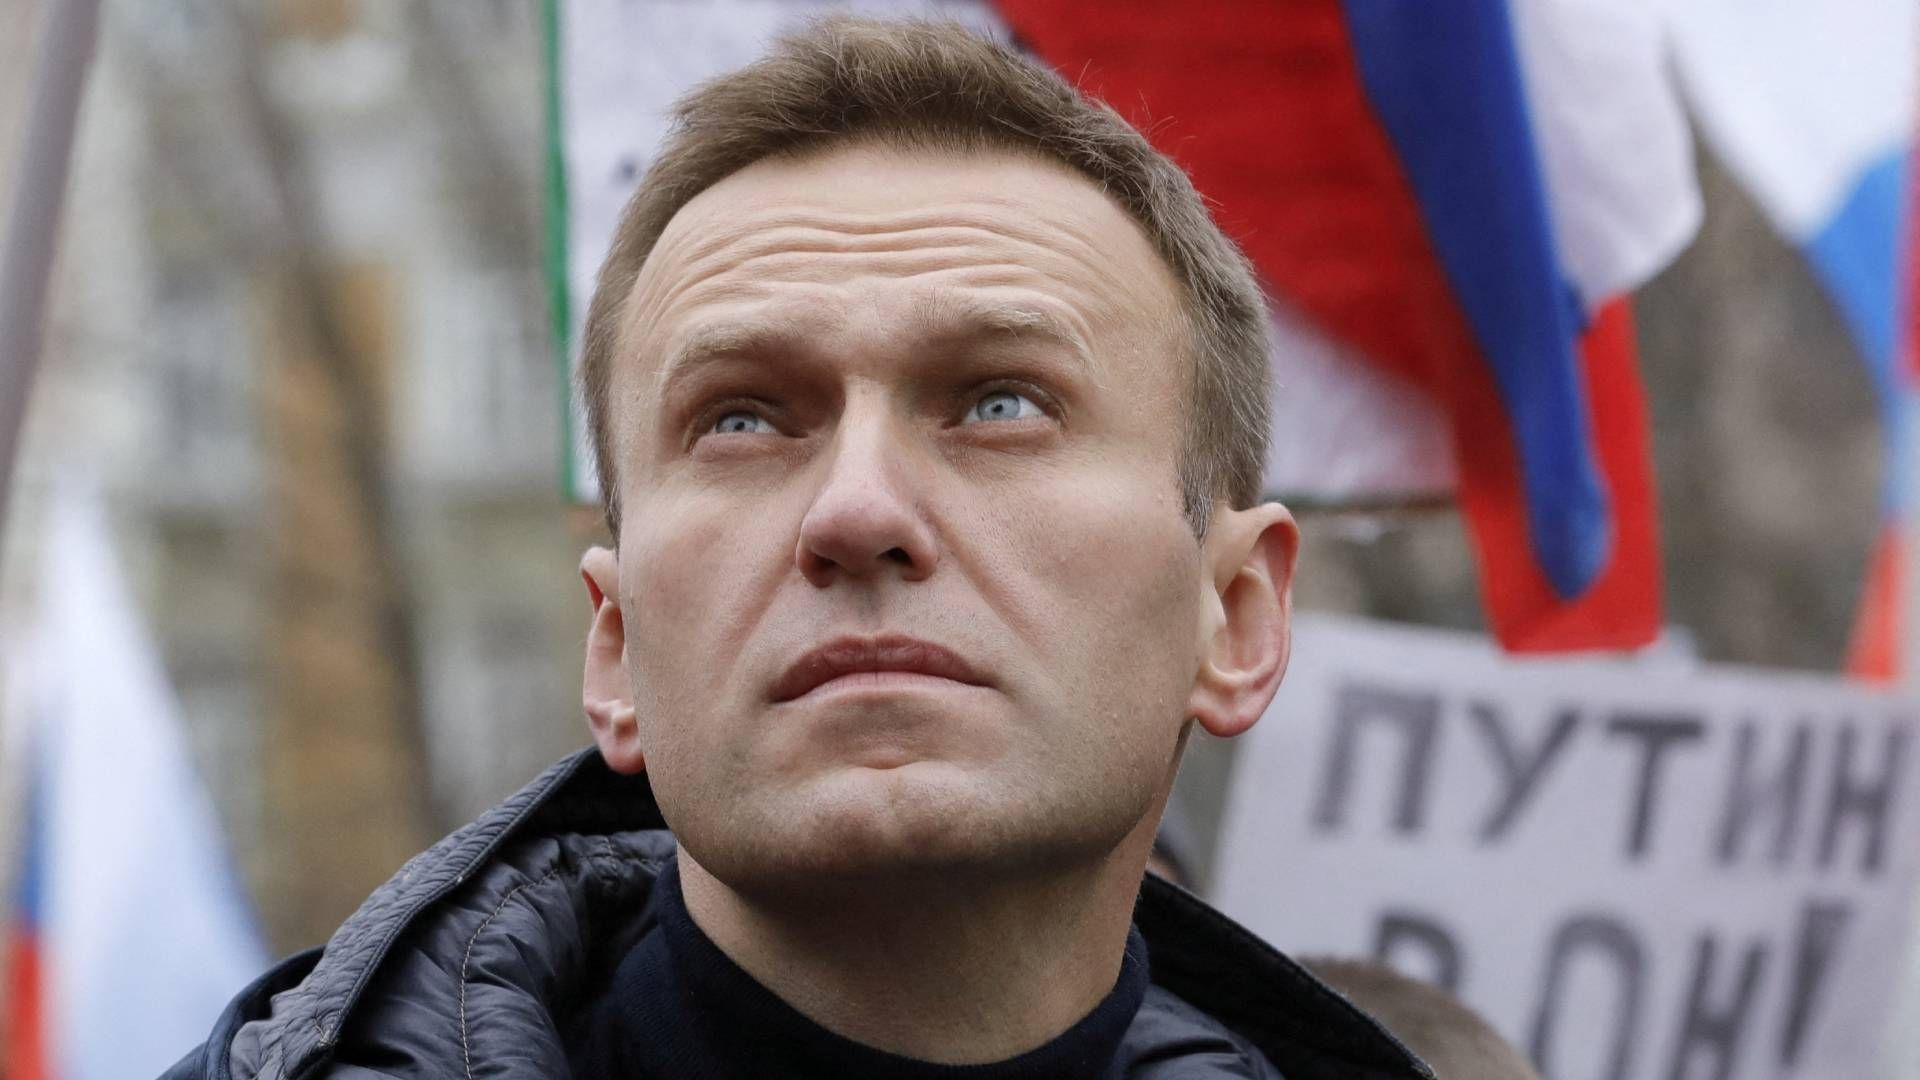 Alexei Navalny falleció súbitamente en la prisión ártica; esto es lo que se sabe de su muerte